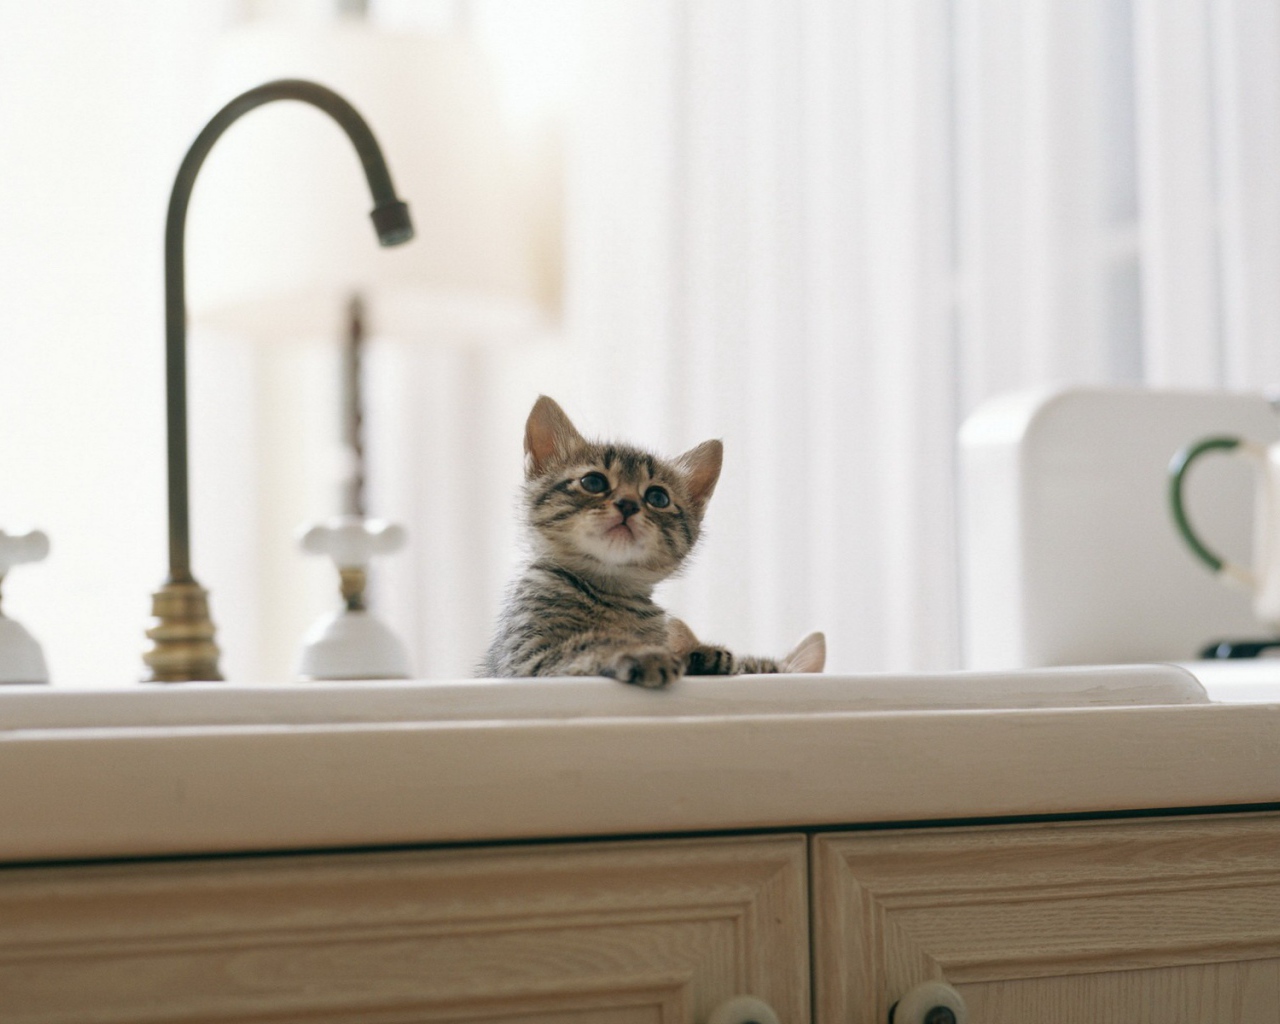 Котенок купается в раковине